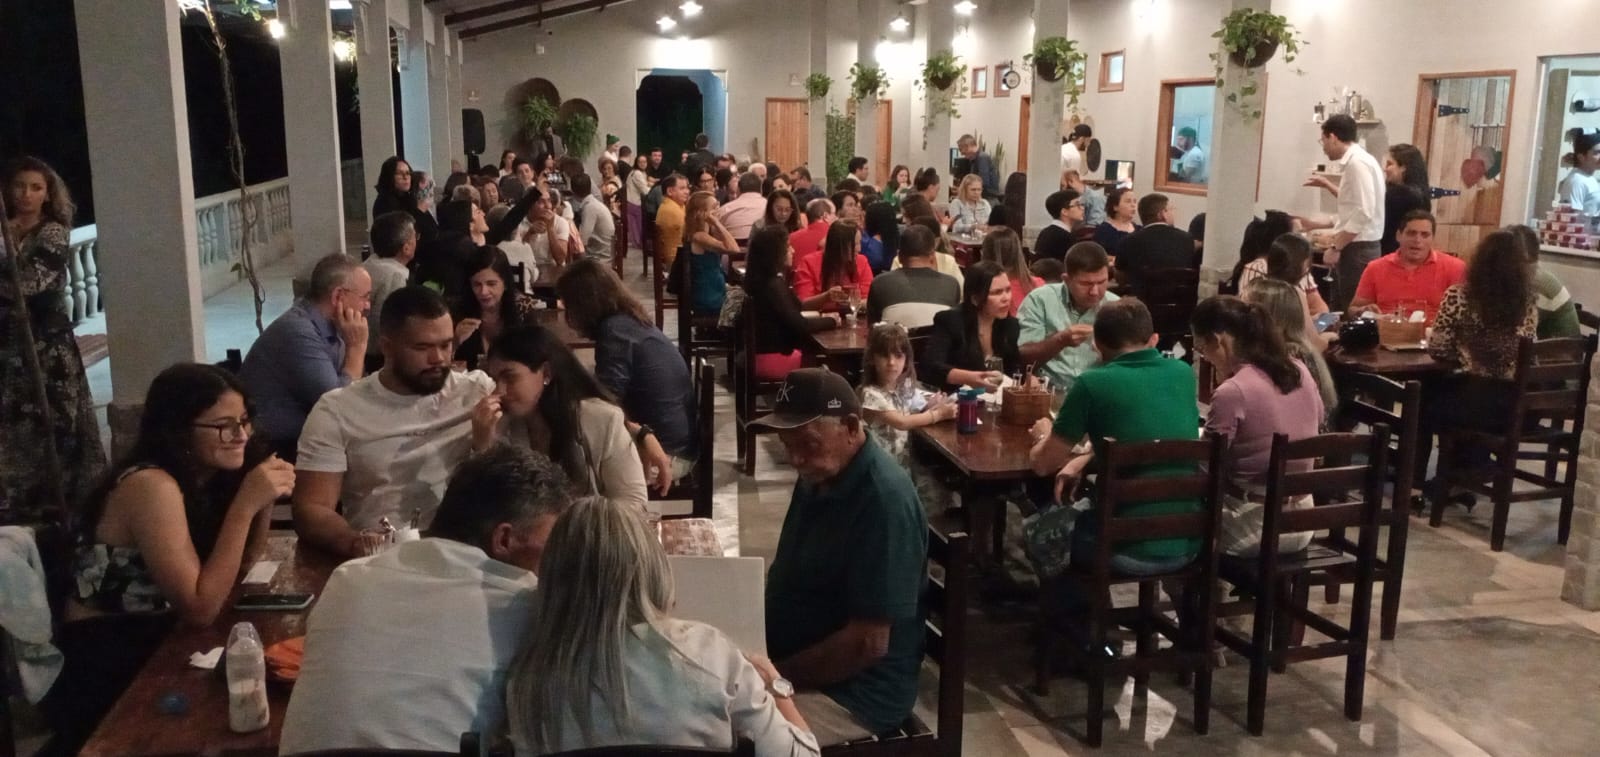 Restaurante Parque das Aroeiras inaugurado com sucesso em Cerro Corá-RN